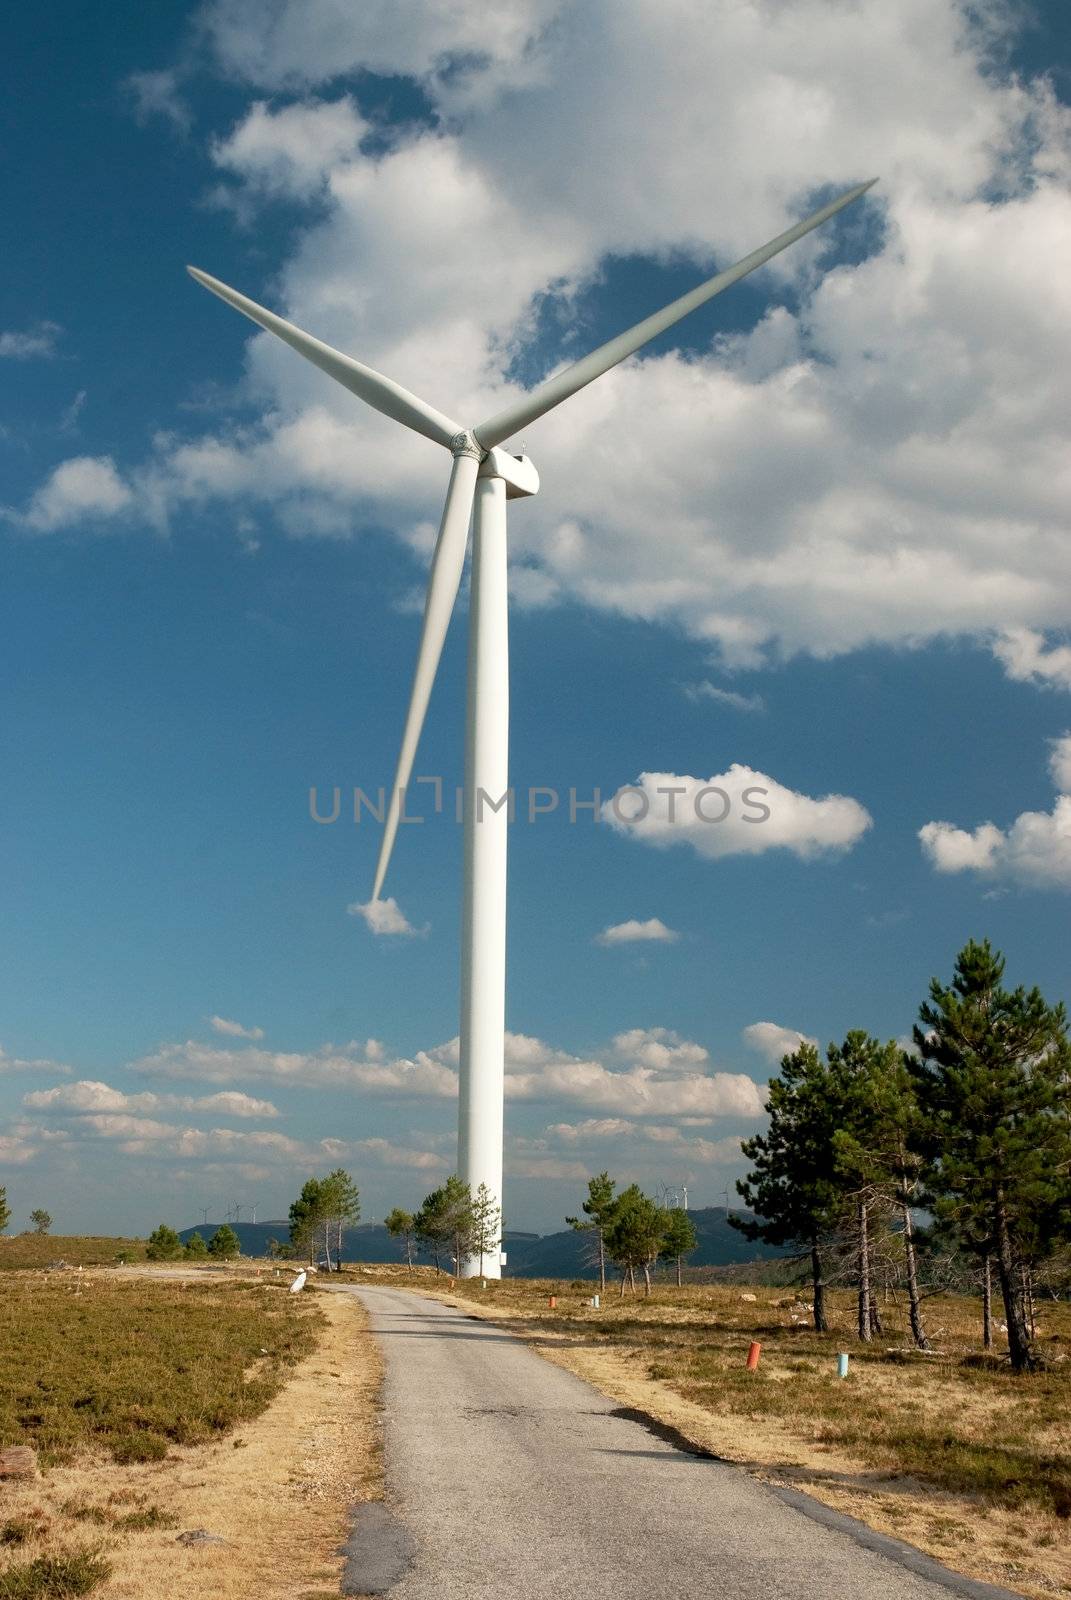 Wind turbine, renewable energy source.